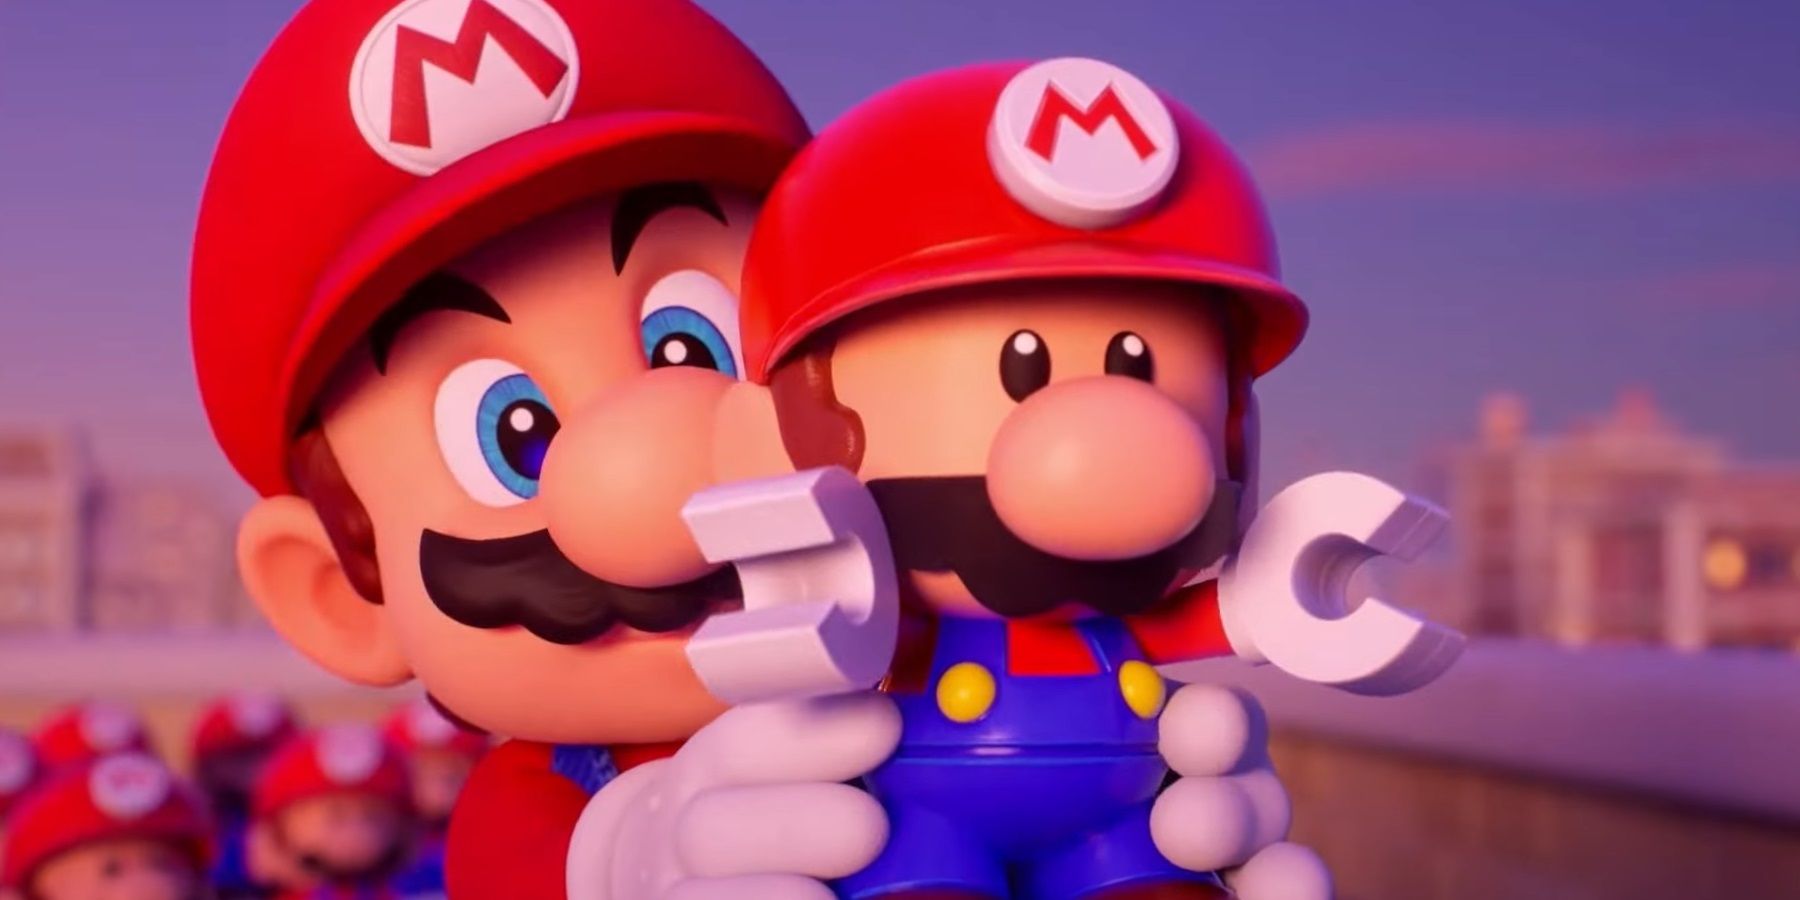 Mario vs Donkey Kong Mario Holding A Mini